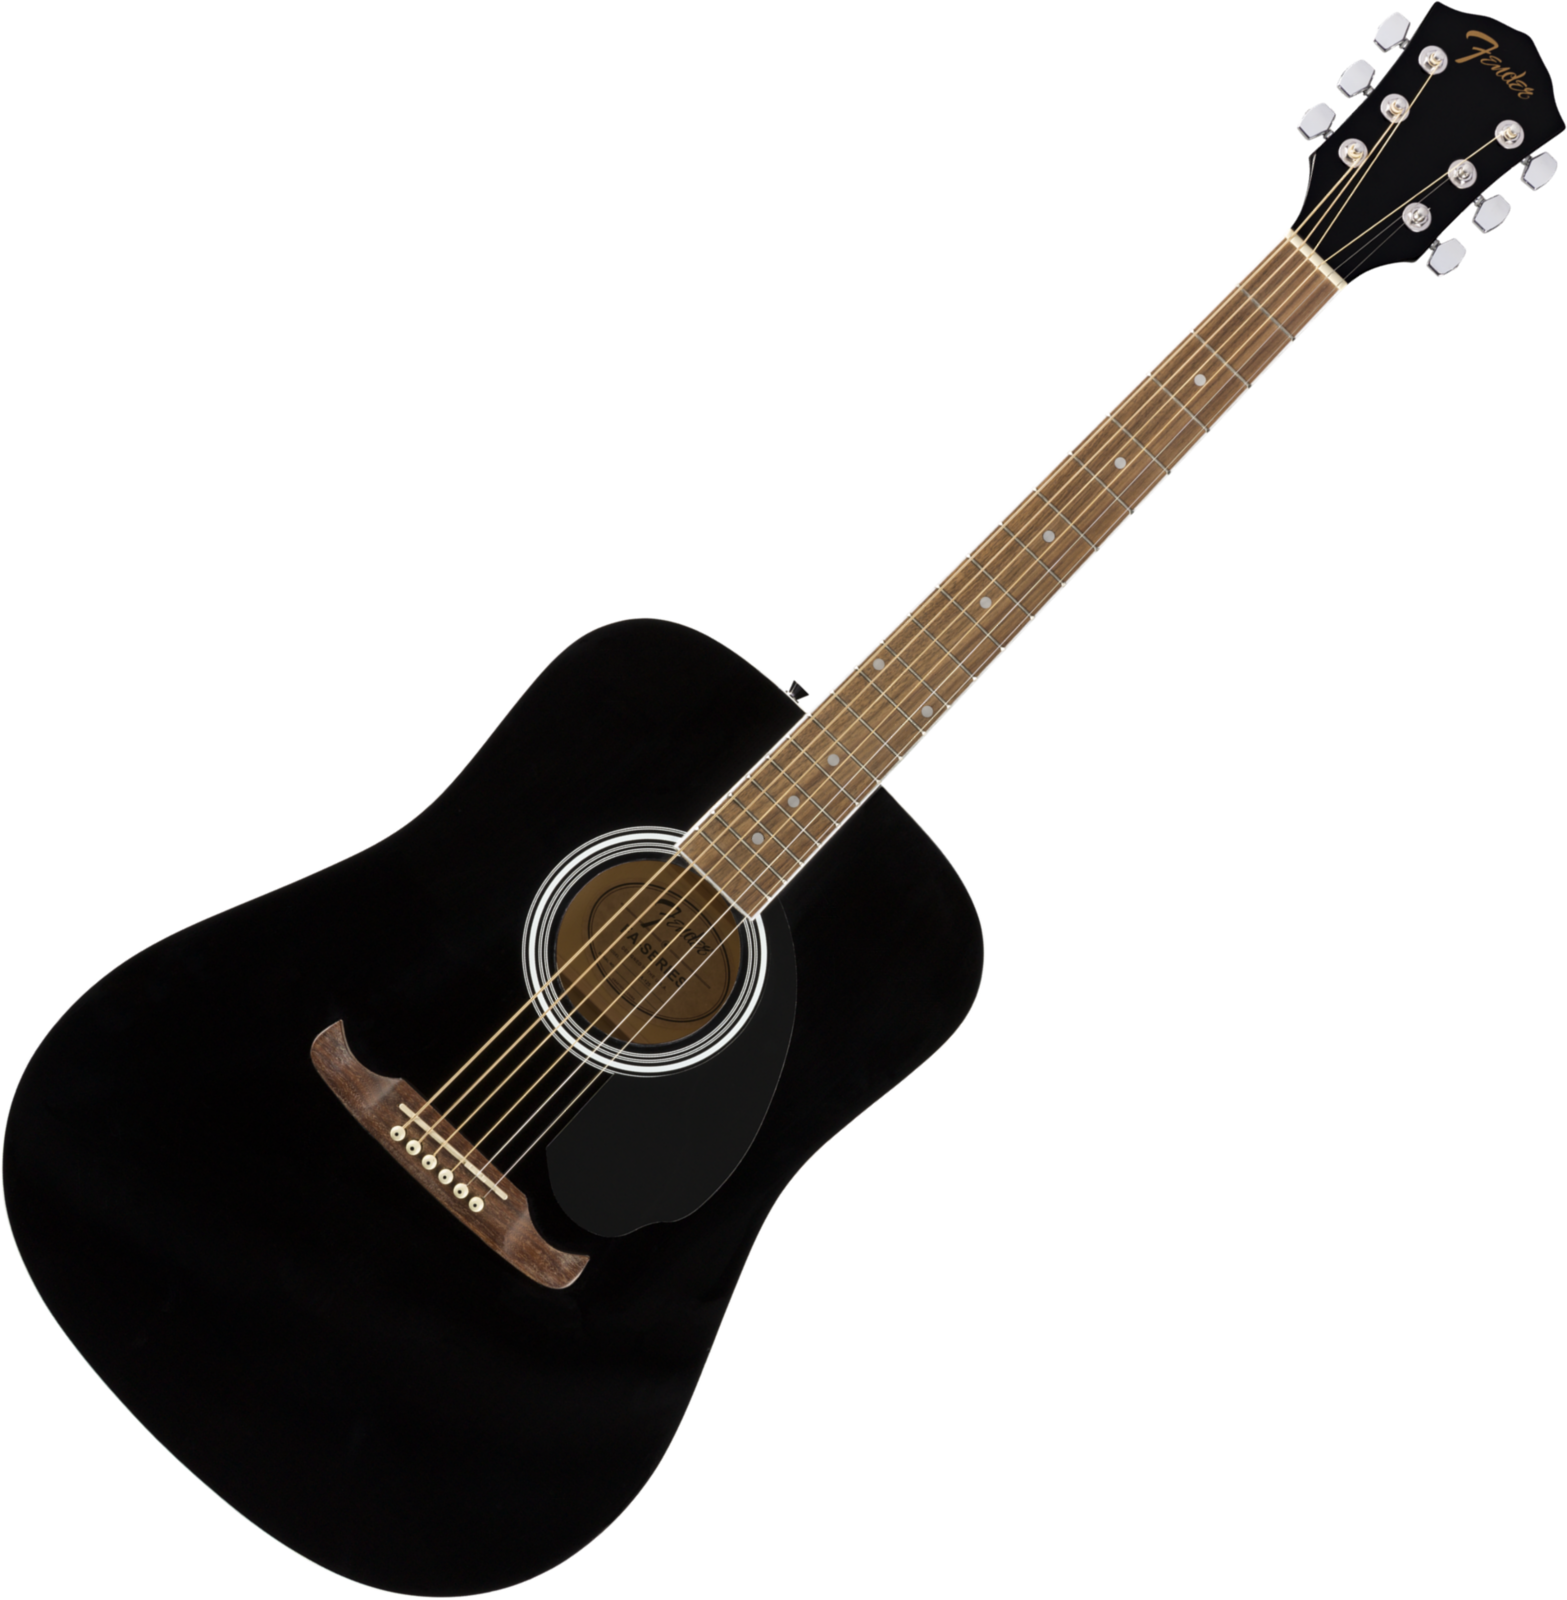 Fender FA-125 WN Black